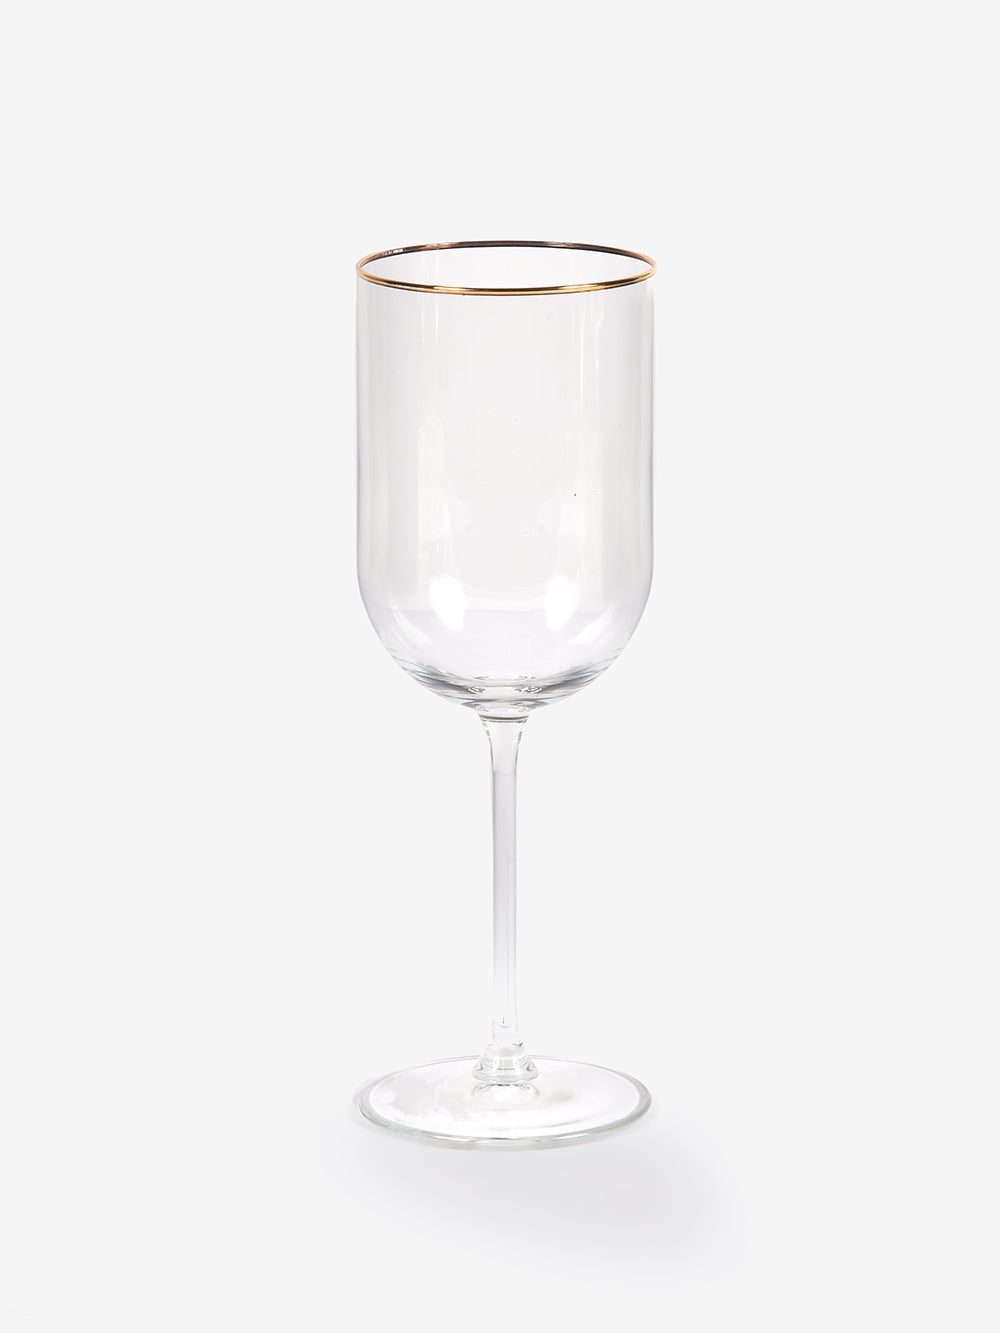 Venezia Gold Rim Wine Glass